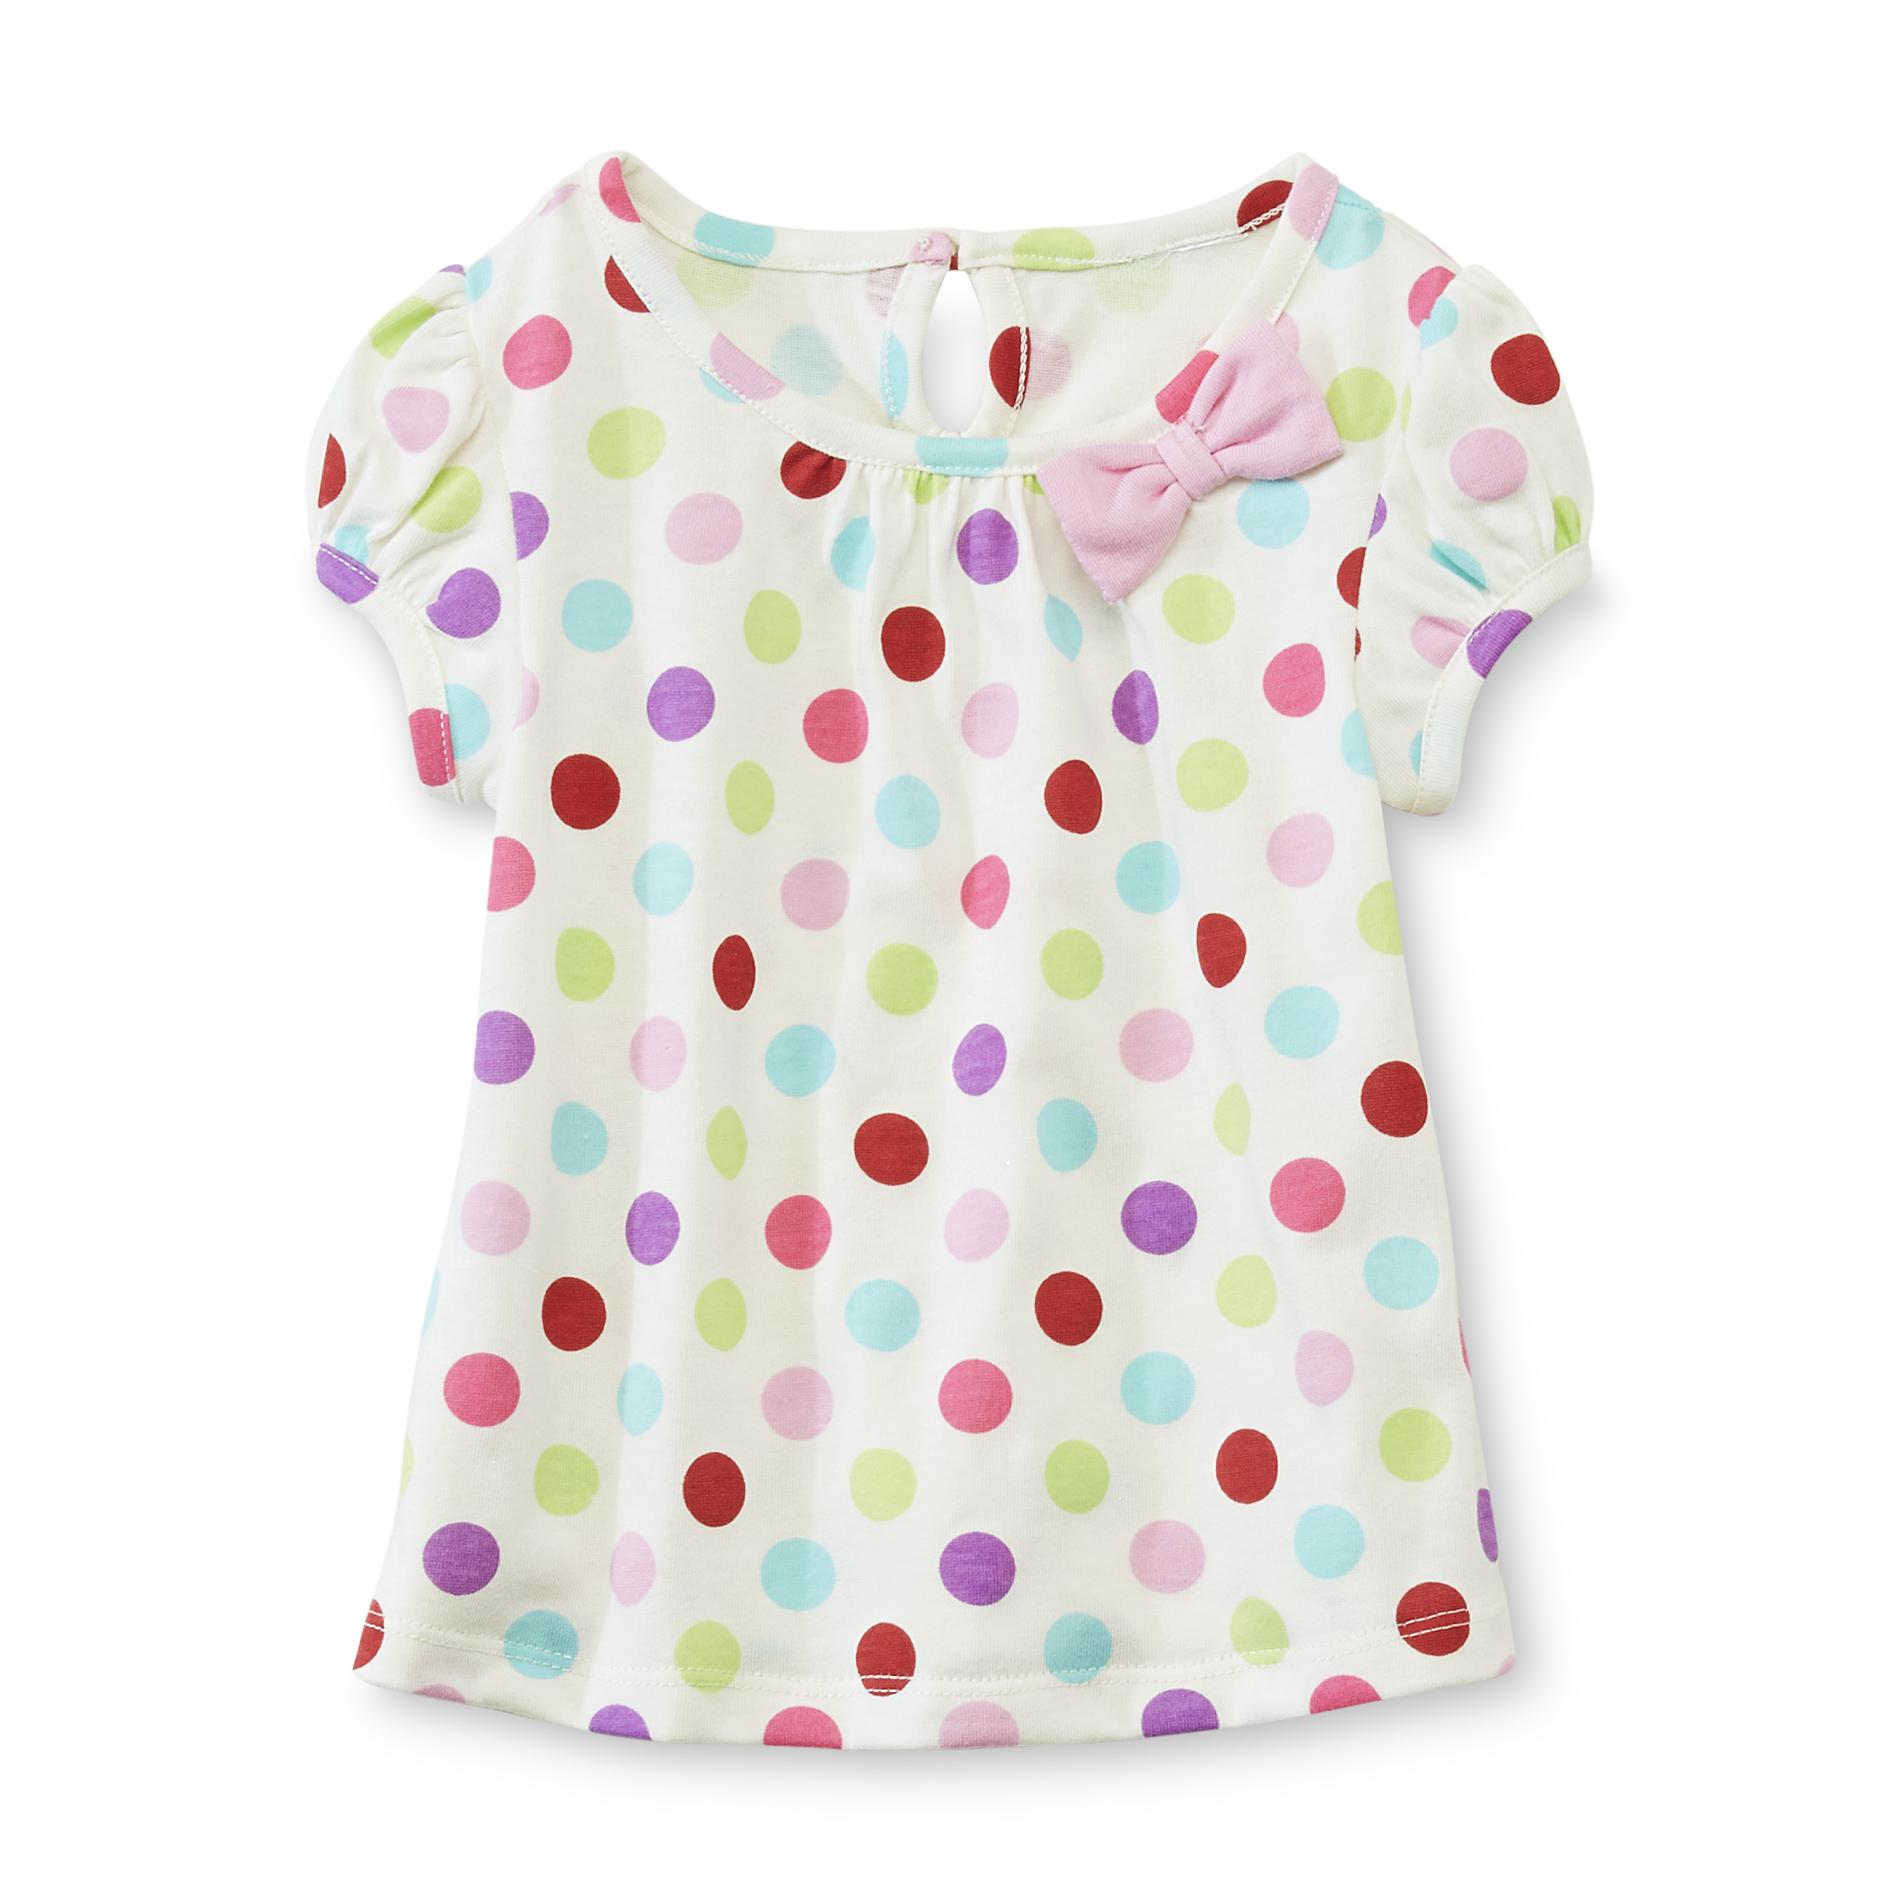 WonderKids Infant & Toddler Girl's Cap Sleeve Top - Polka-Dot